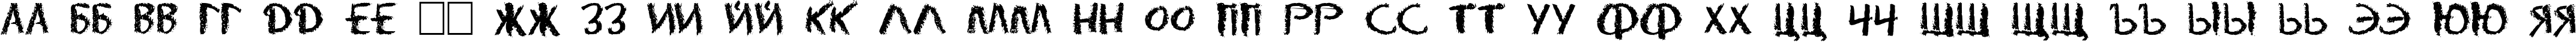 Пример написания русского алфавита шрифтом DS Eraser Cyr